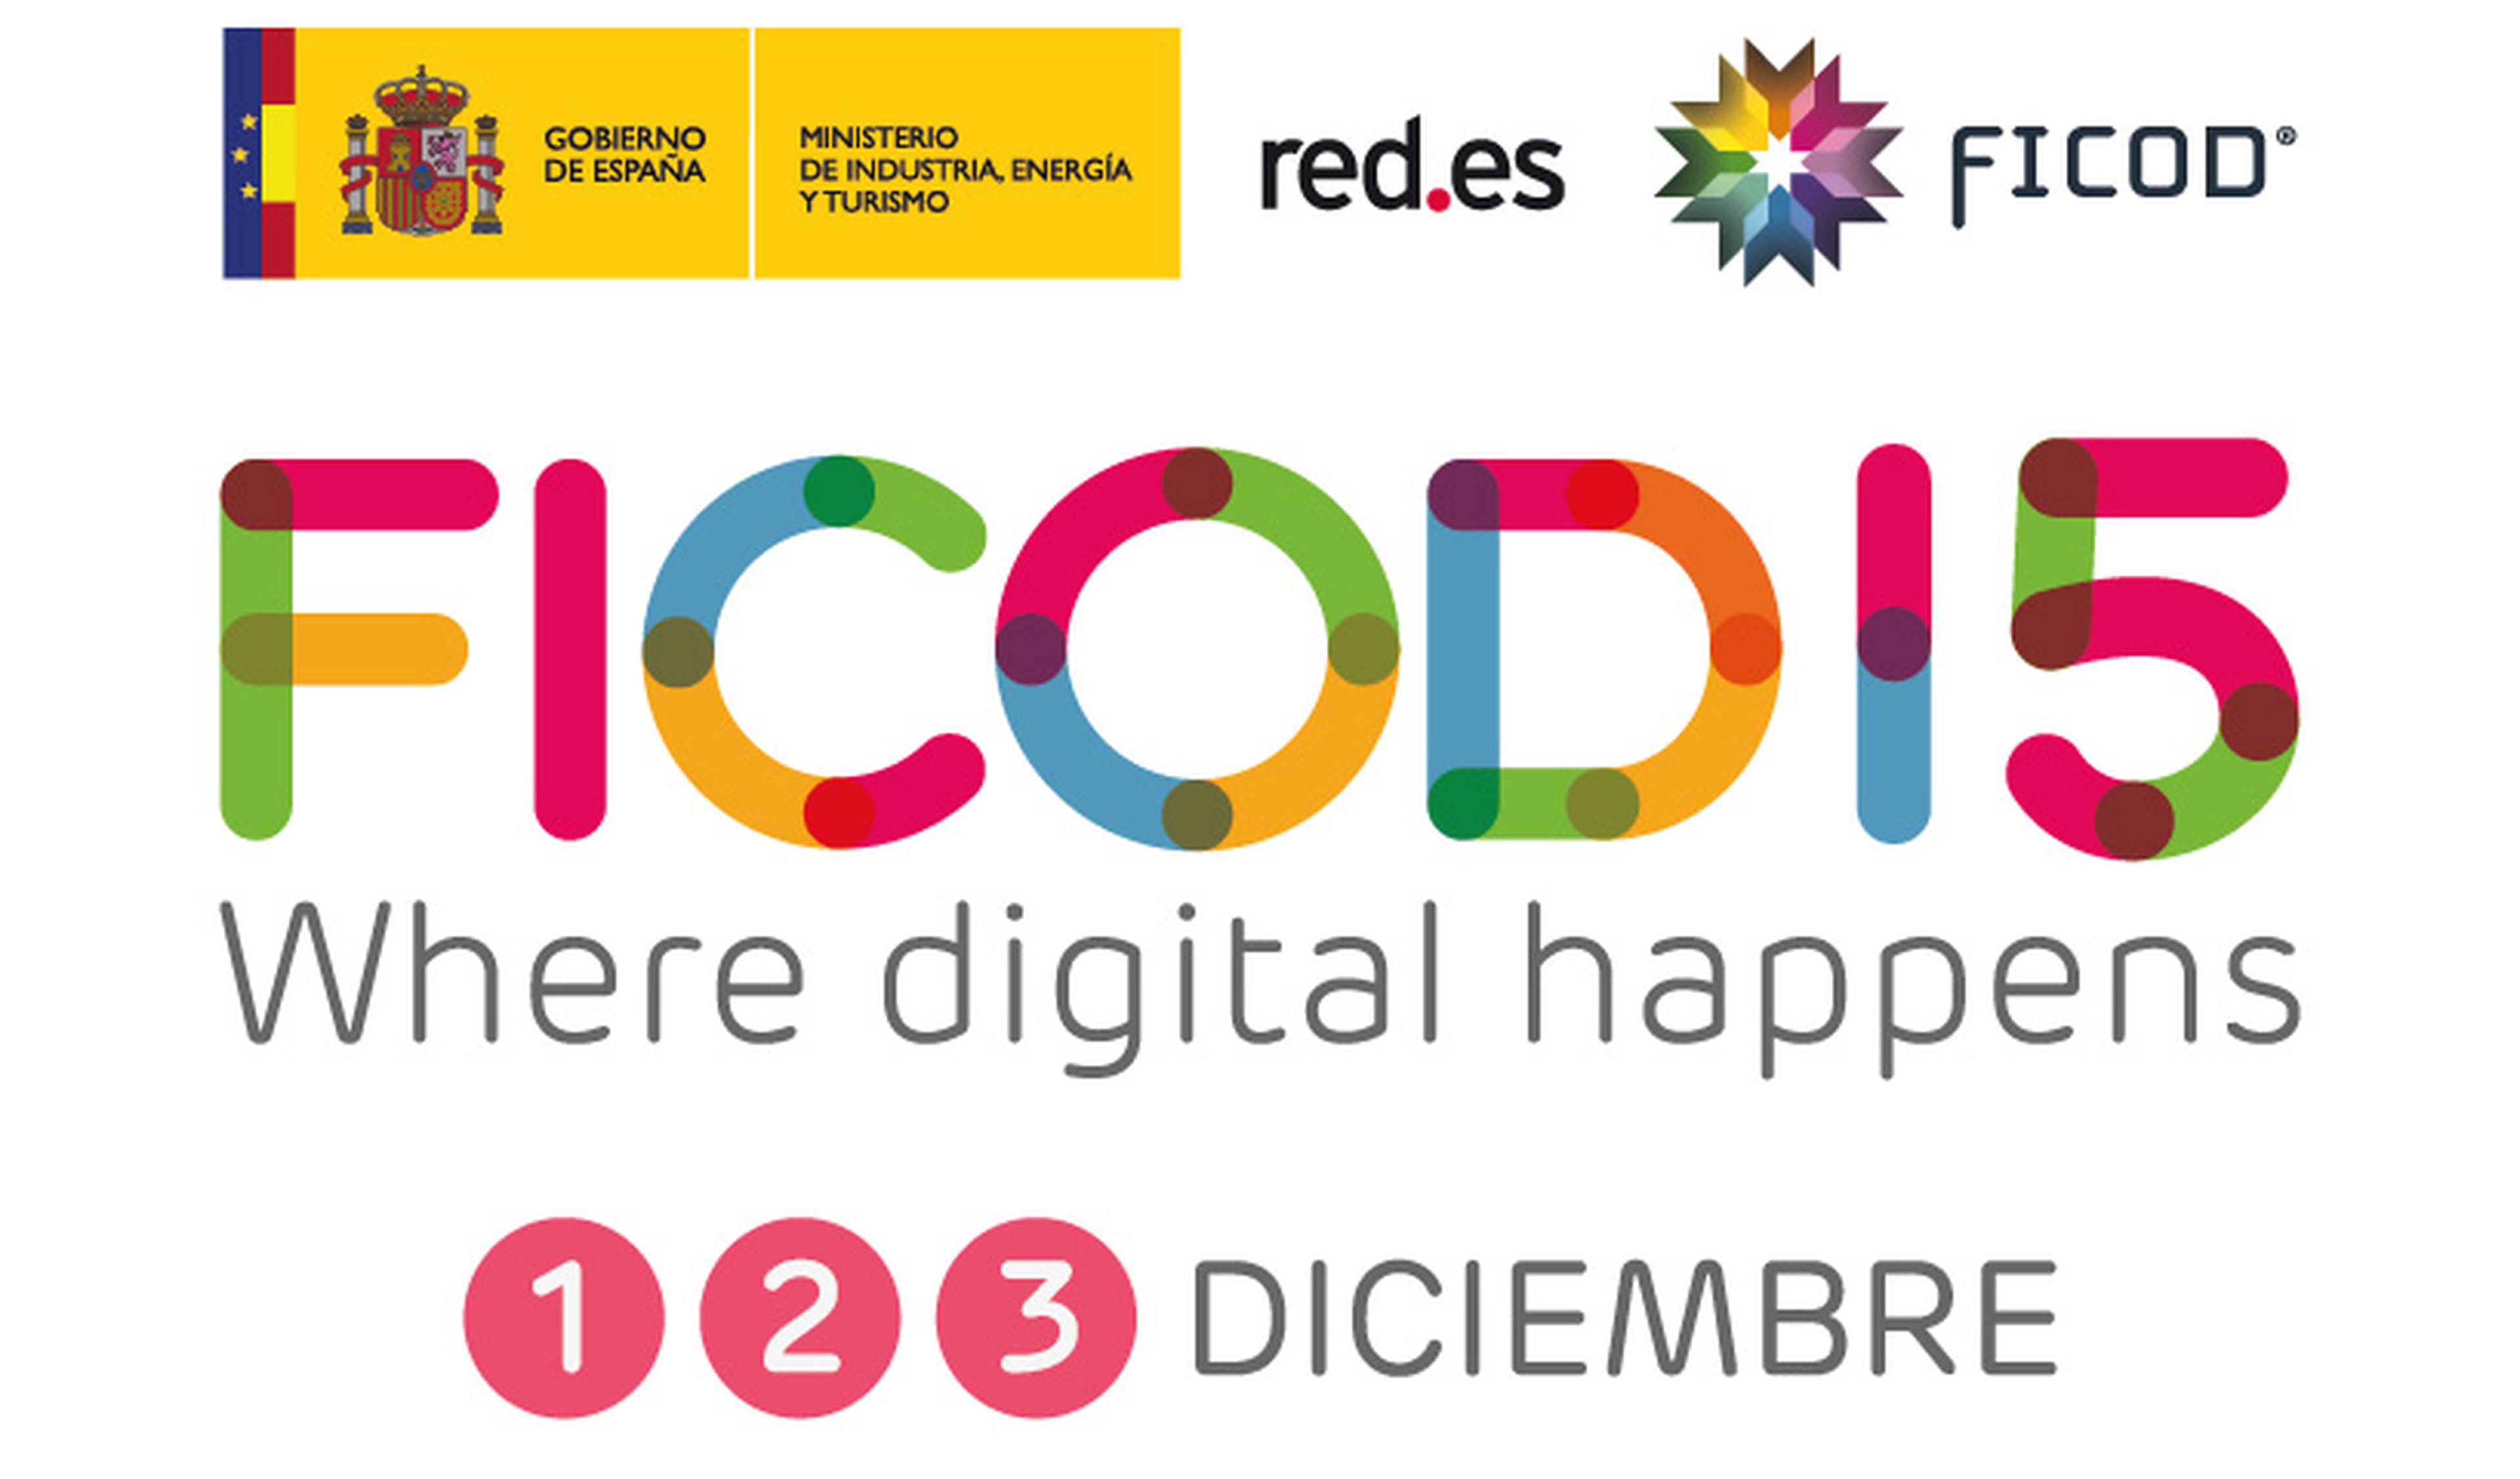 FICOD 2015 se celebrará del 1 al 3 de diciembre en Madrid, es de acceso gratuito